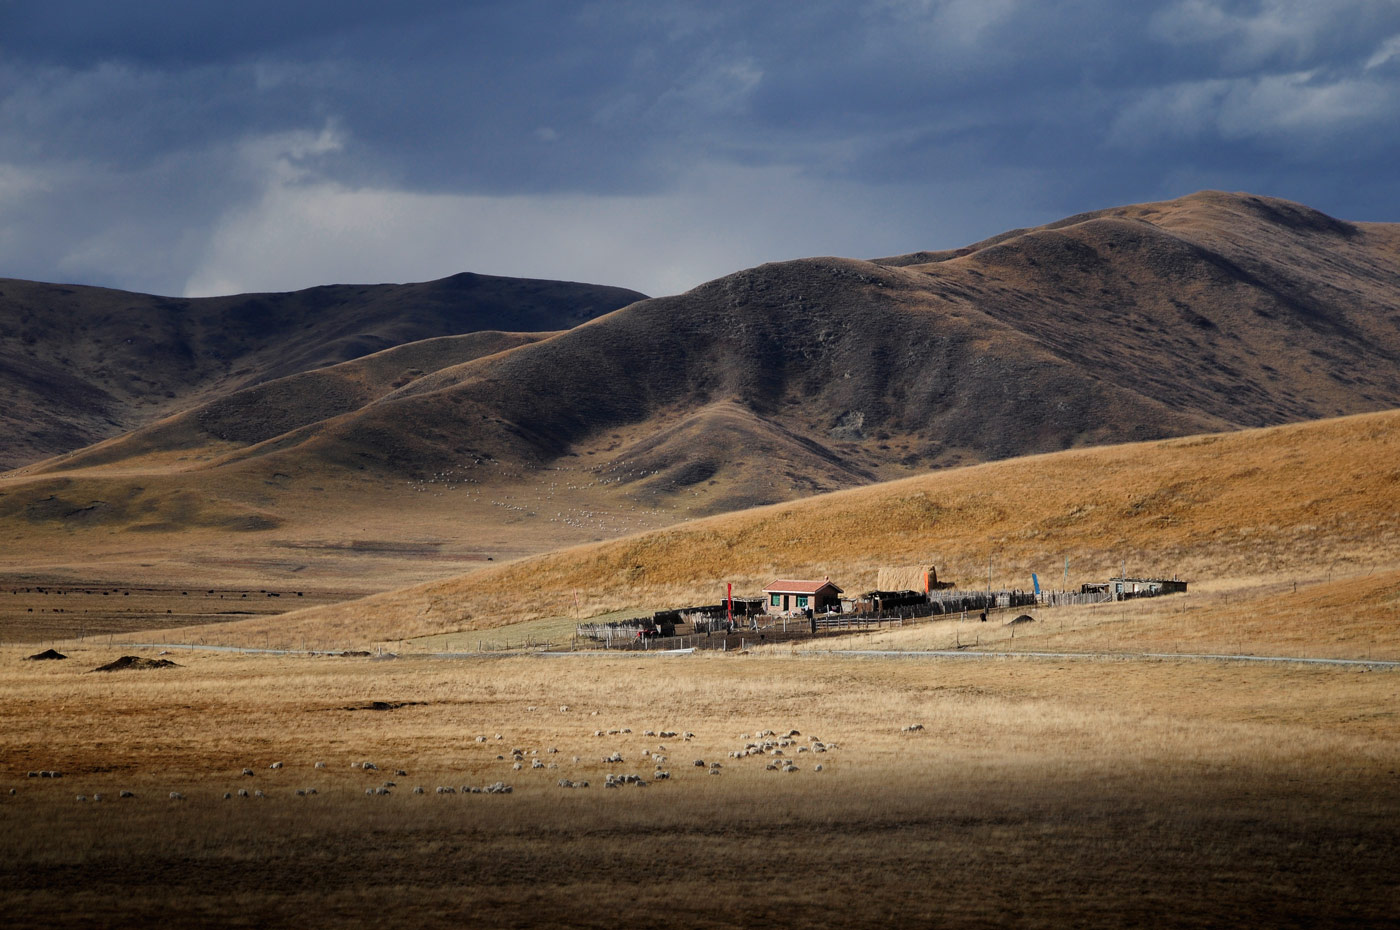 Ruoergai Grassland, Tibetan China, 2010